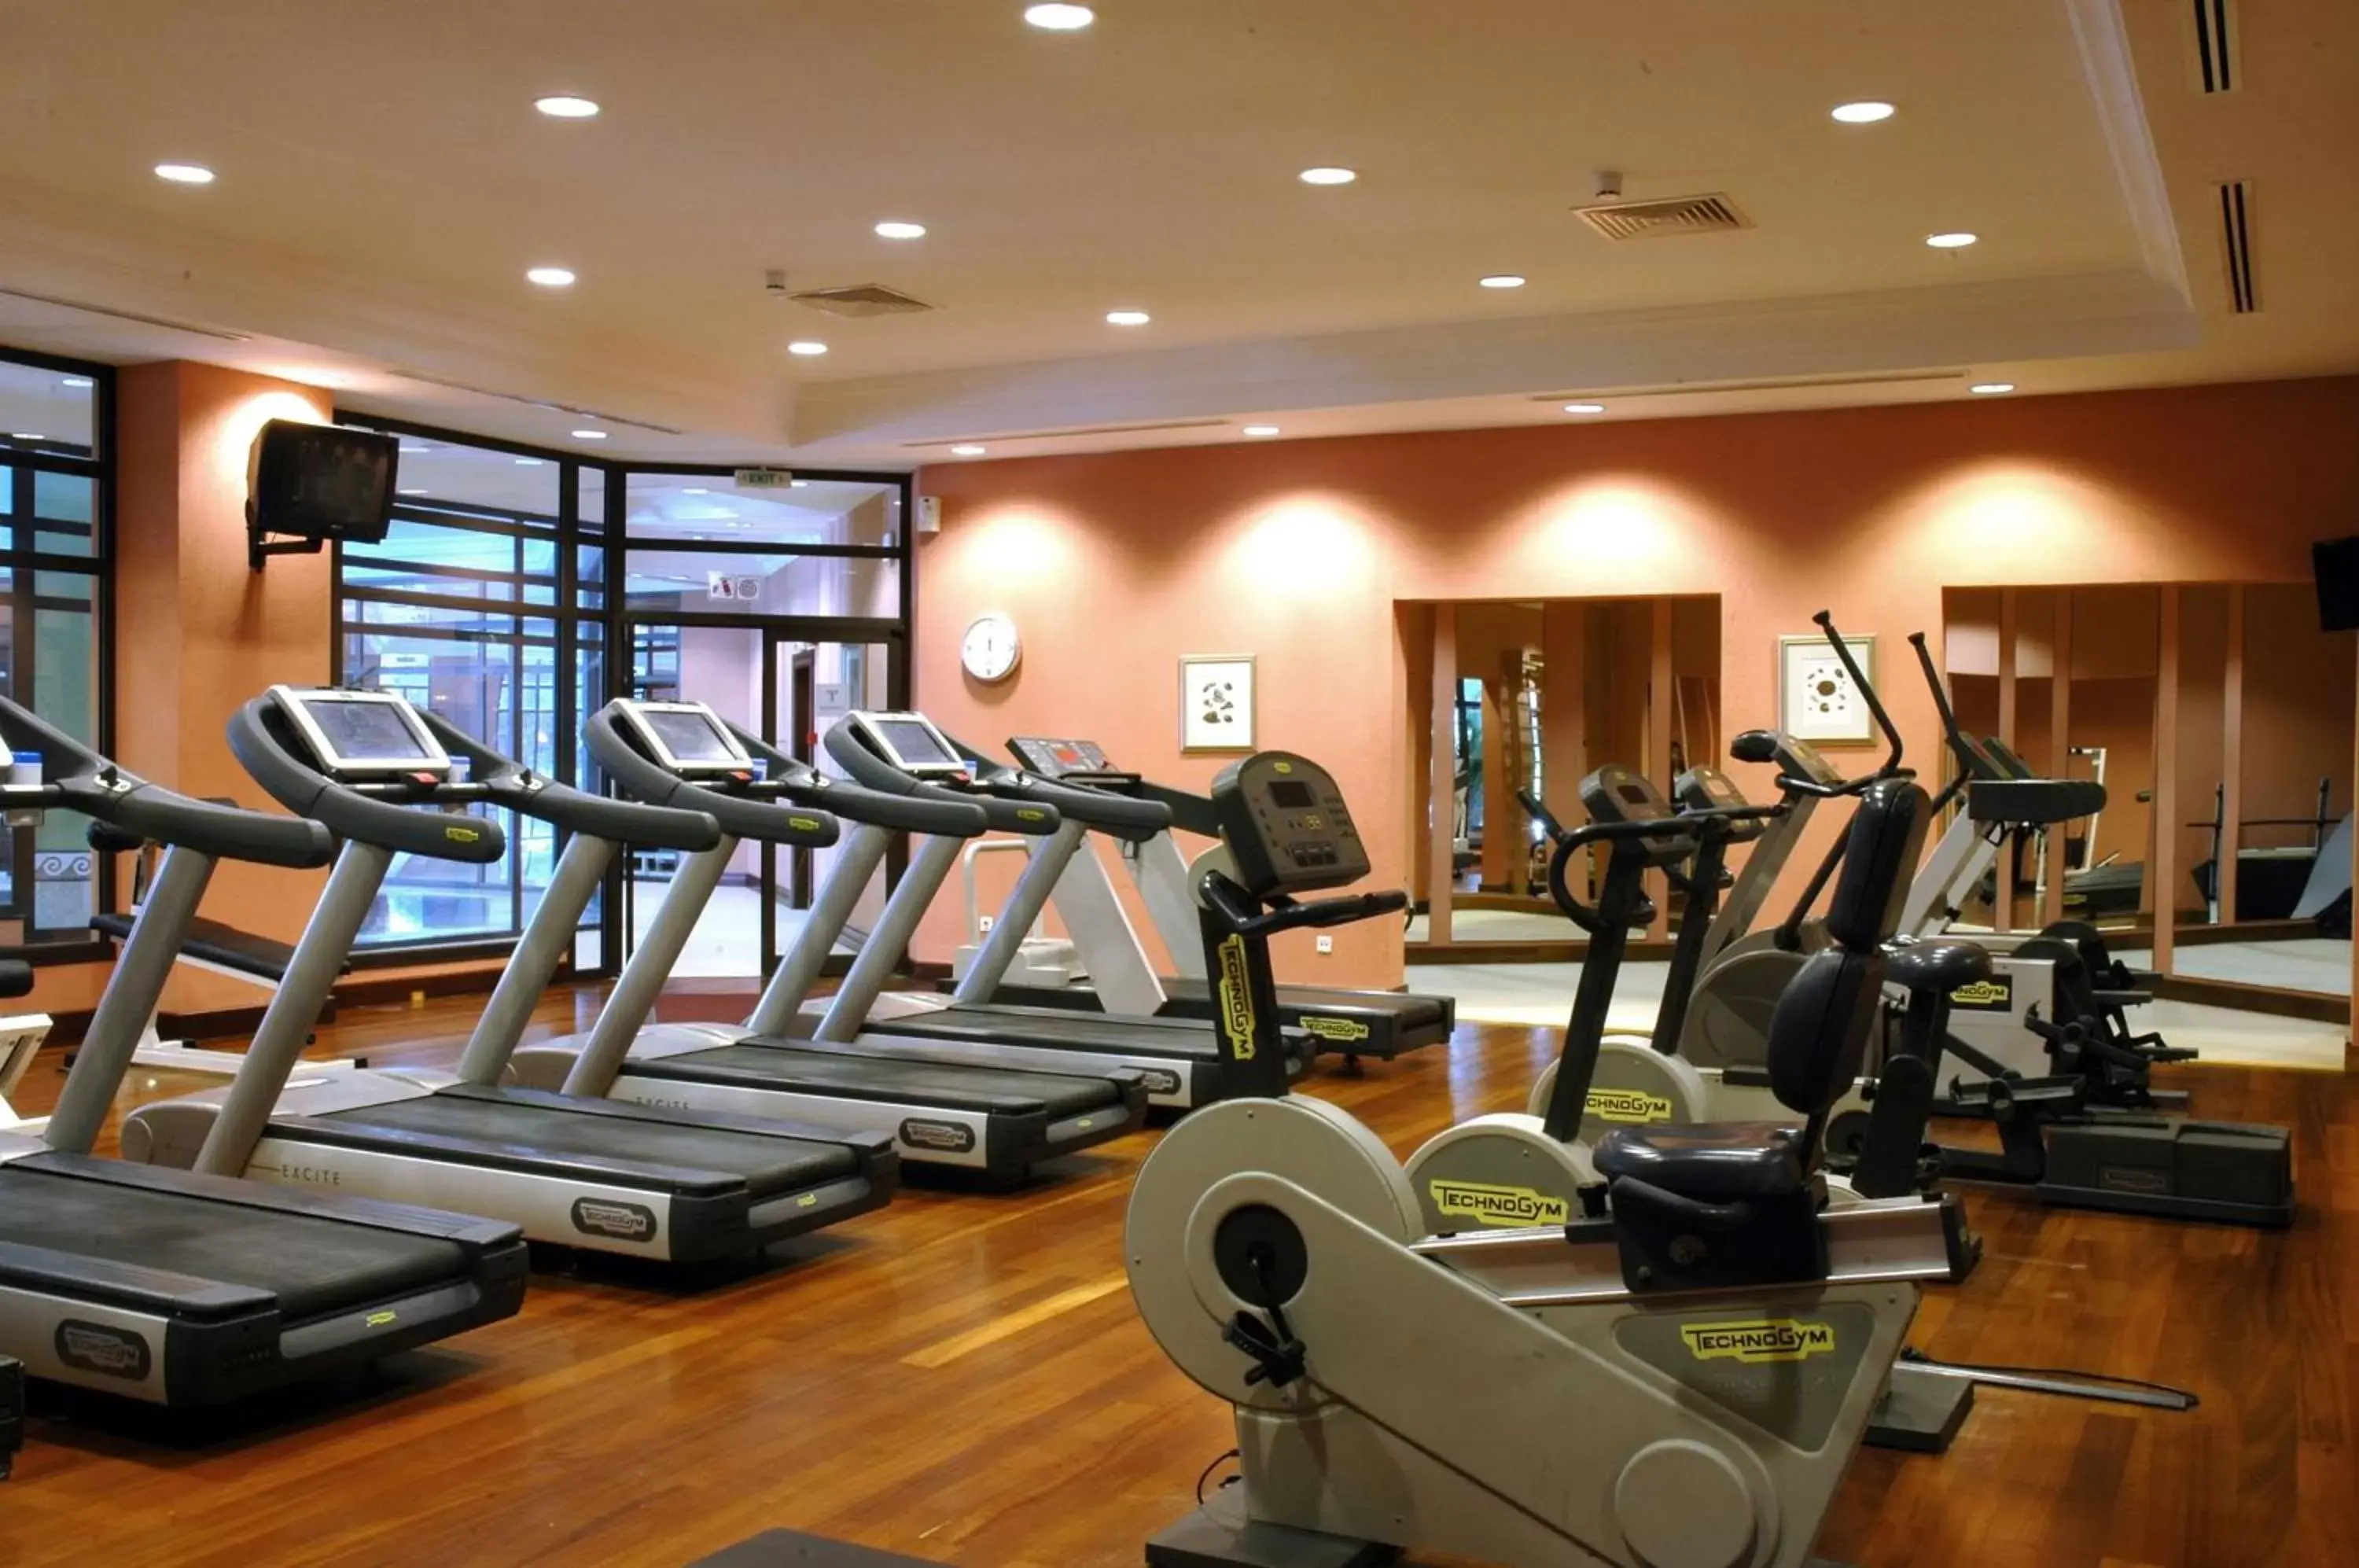 Fitness centre/facilities, Fitness Center/Facilities in Hyatt Regency Thessaloniki